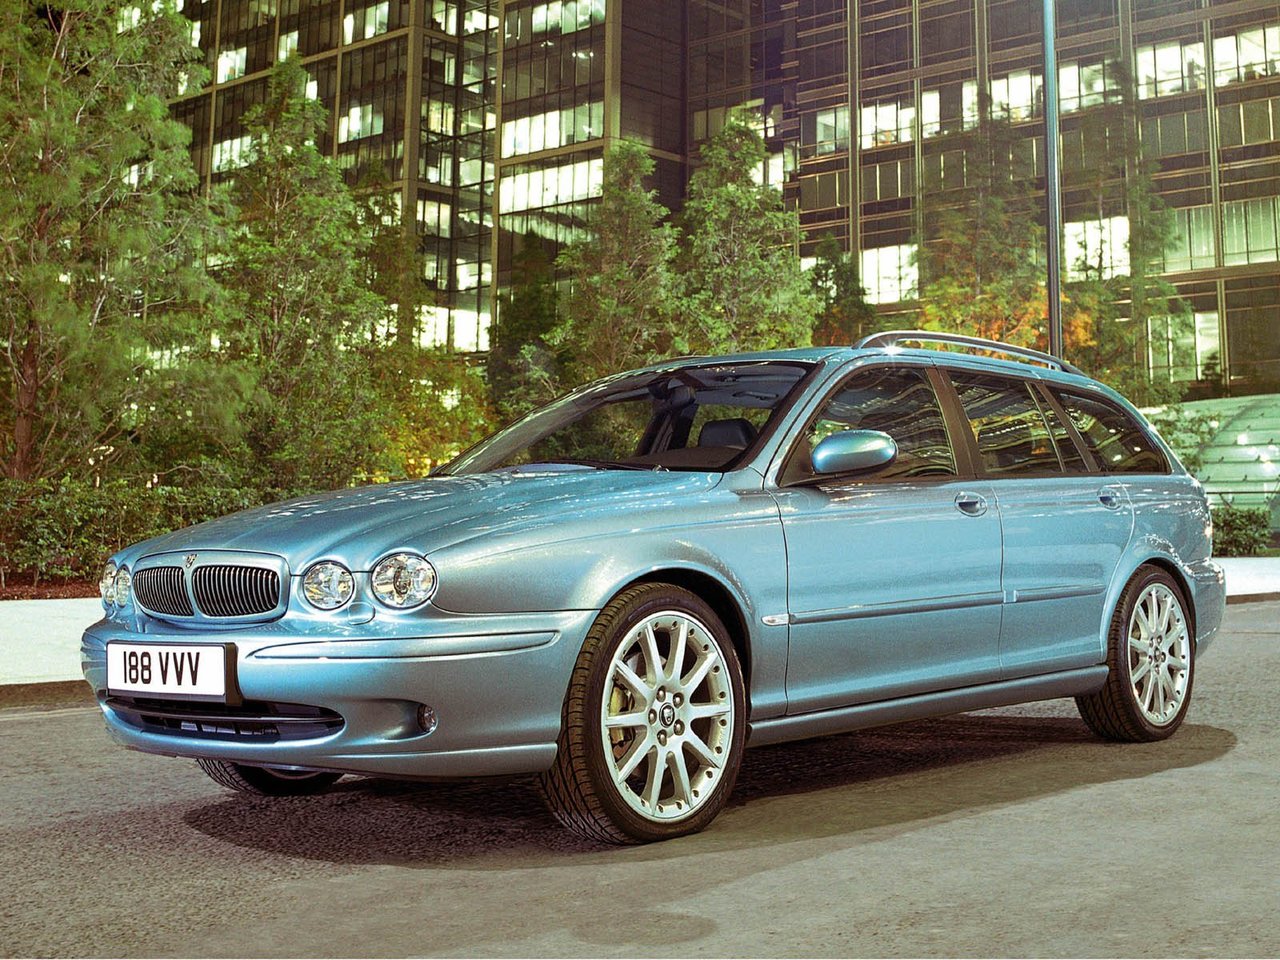 Расход газа шести комплектаций универсала пять дверей Jaguar X-Type. Разница стоимости заправки газом и бензином. Автономный пробег до и после установки ГБО.